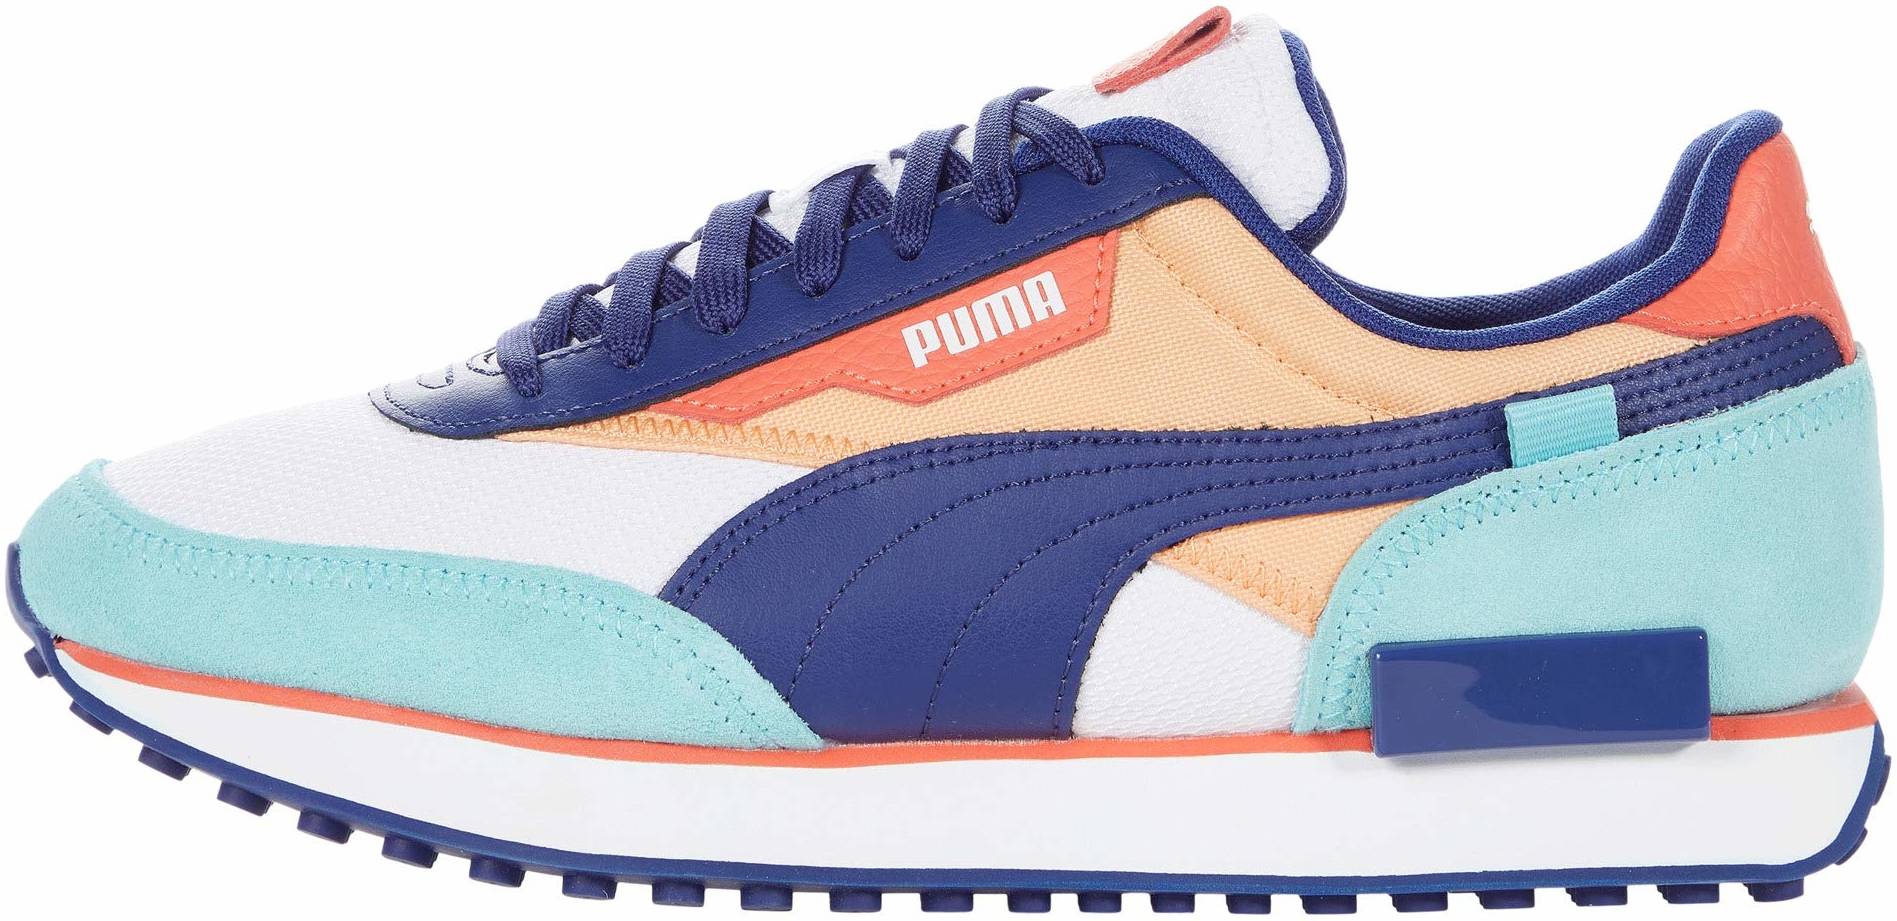 puma slip on tennis shoes